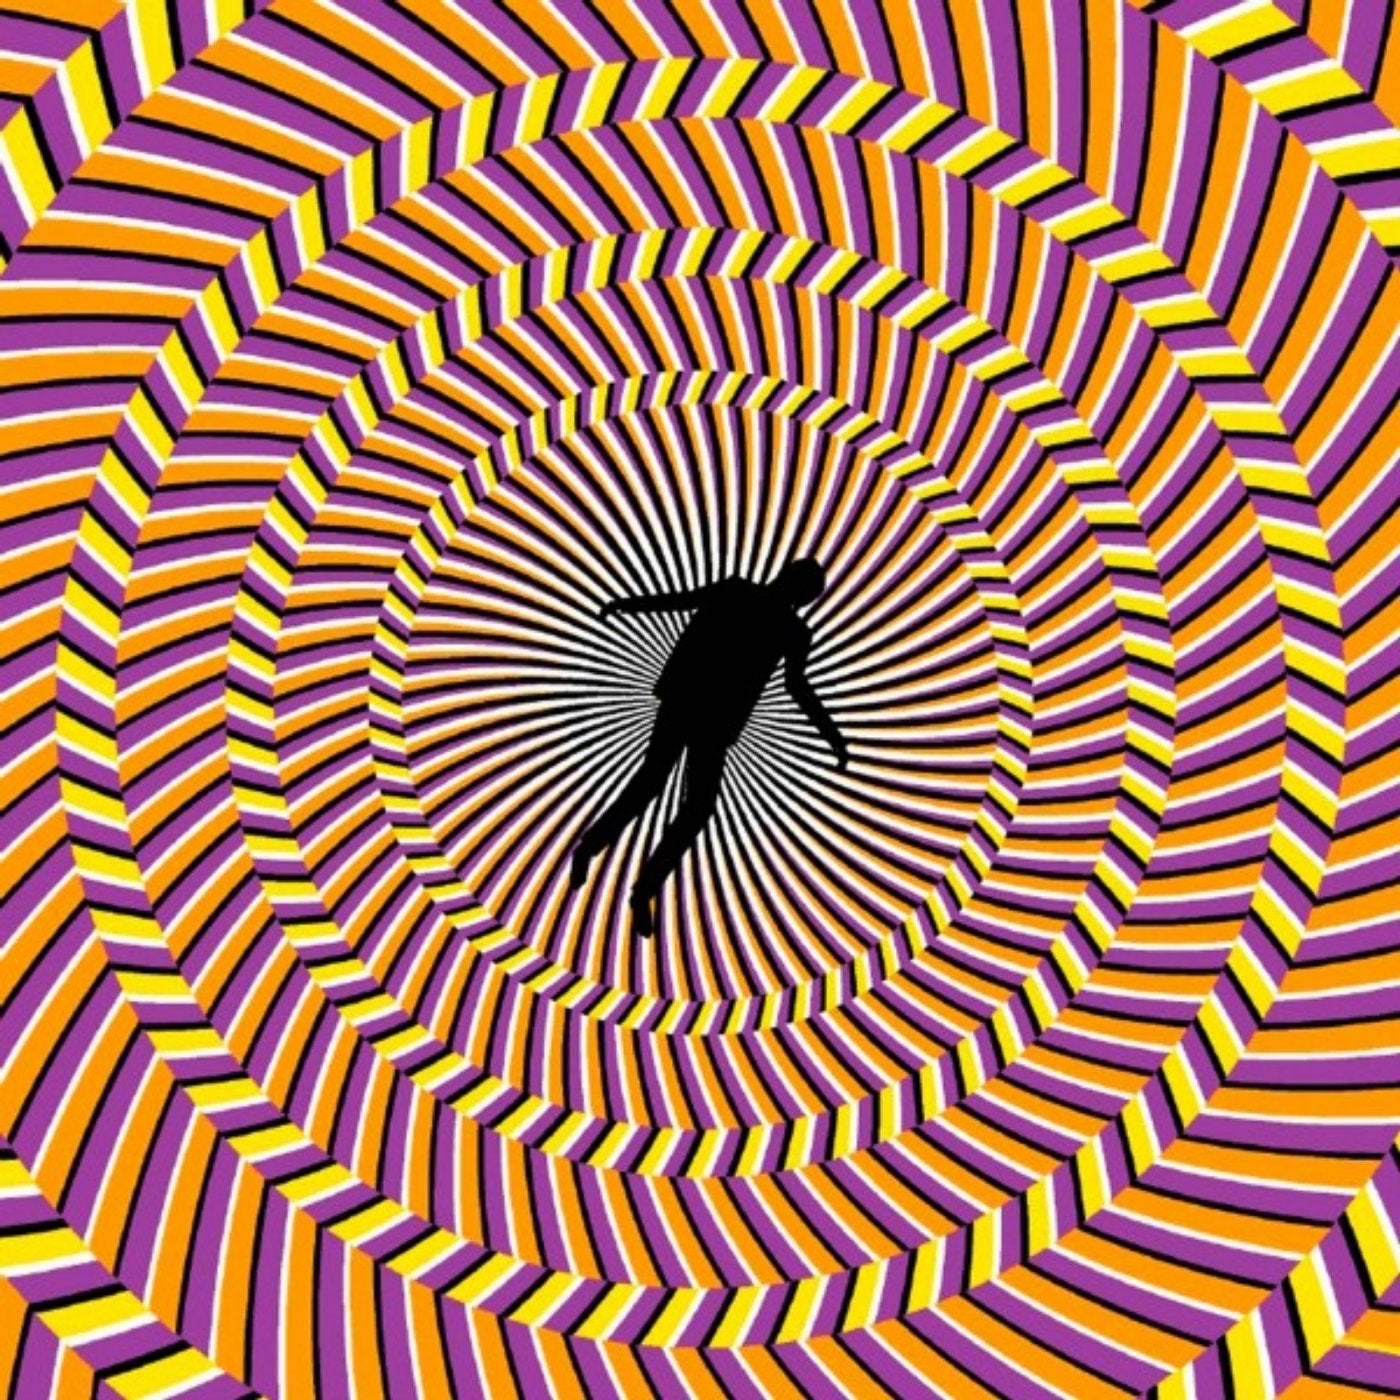 Движущиеся картинки для глаз. «Оптические иллюзии» (Автор Джейкобс ПЭТ). Иллюзия движения. Зрительные иллюзии. Визуальные иллюзии.